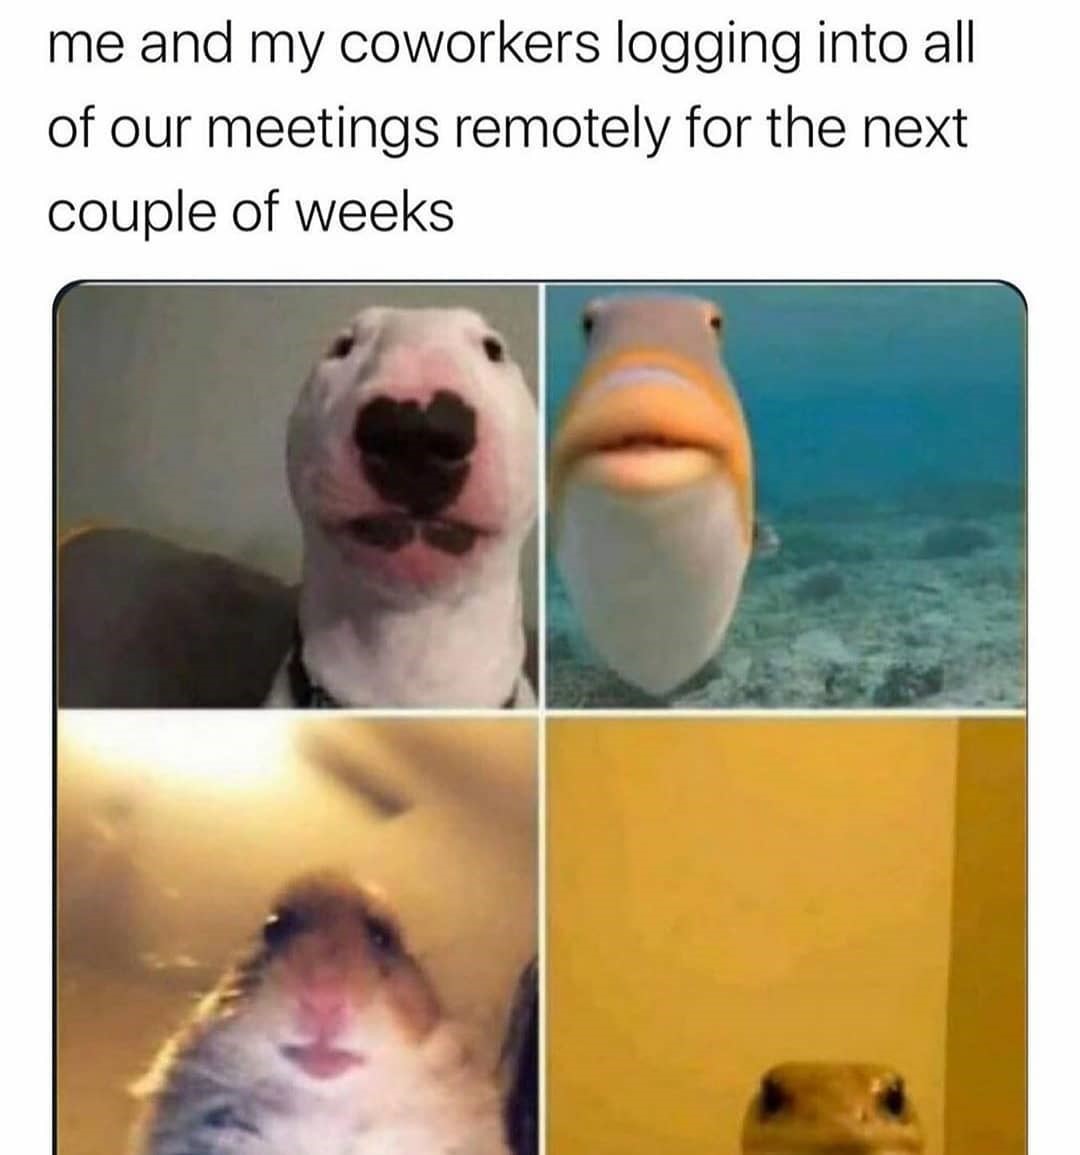 Remote Meetings meme